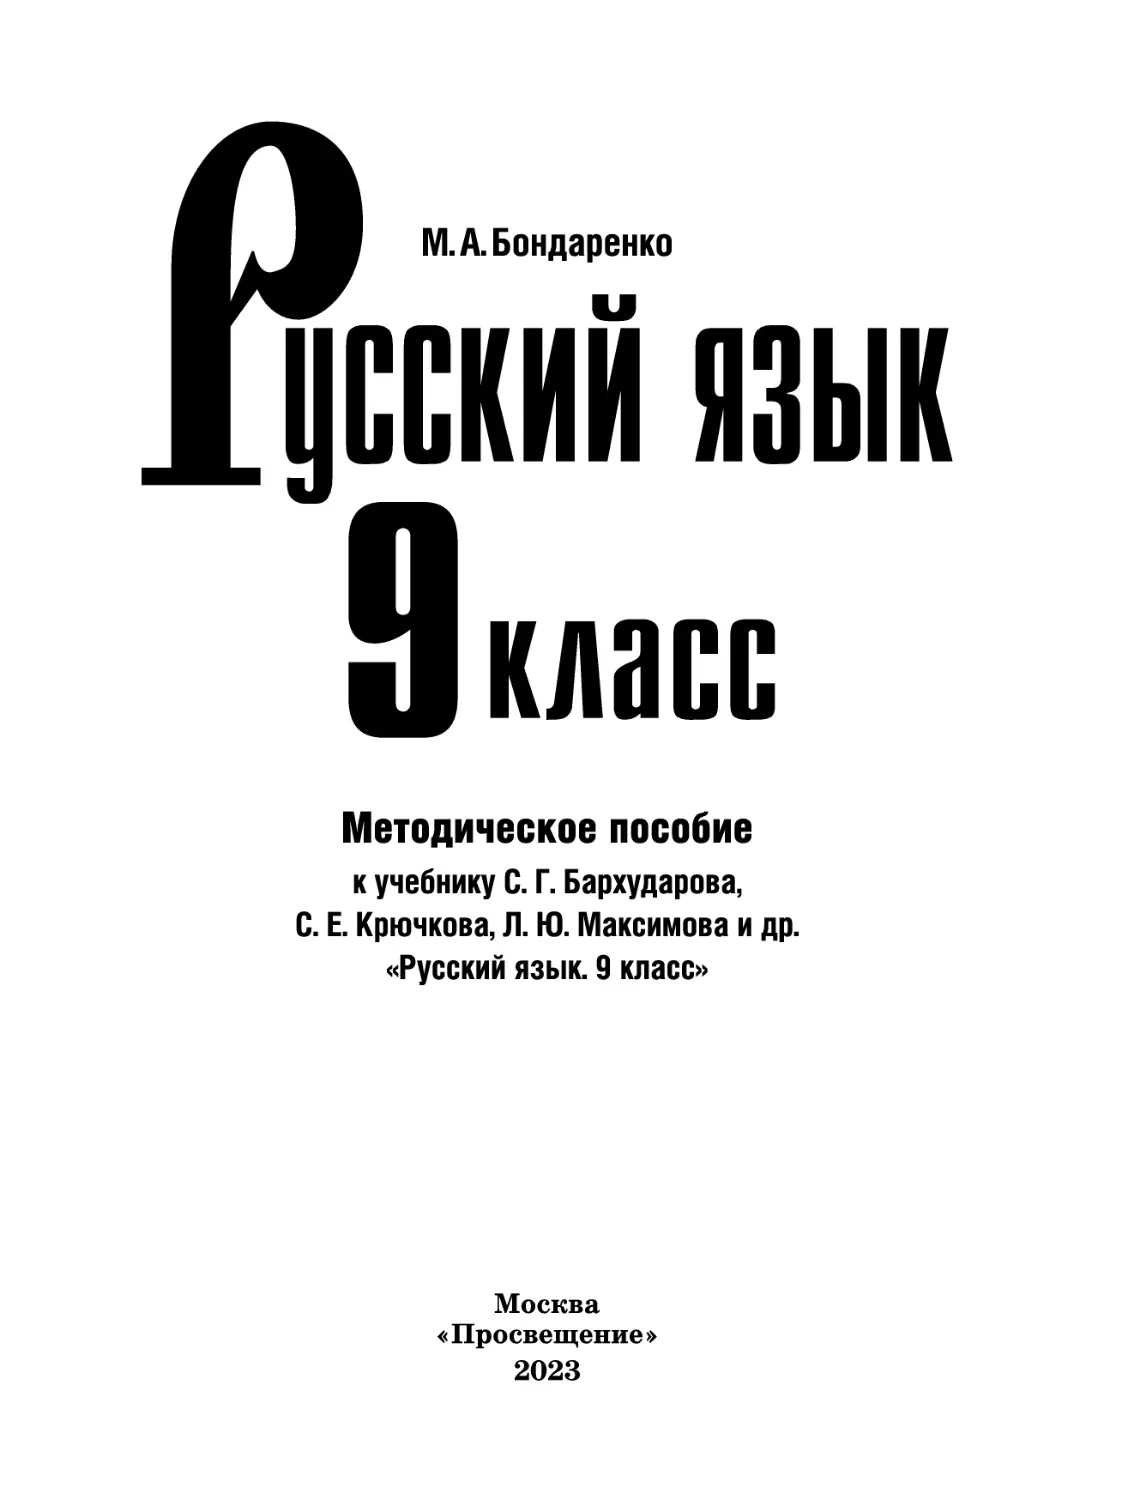 Русский язык. 9 кл. класс (М.А. Бондаренко)